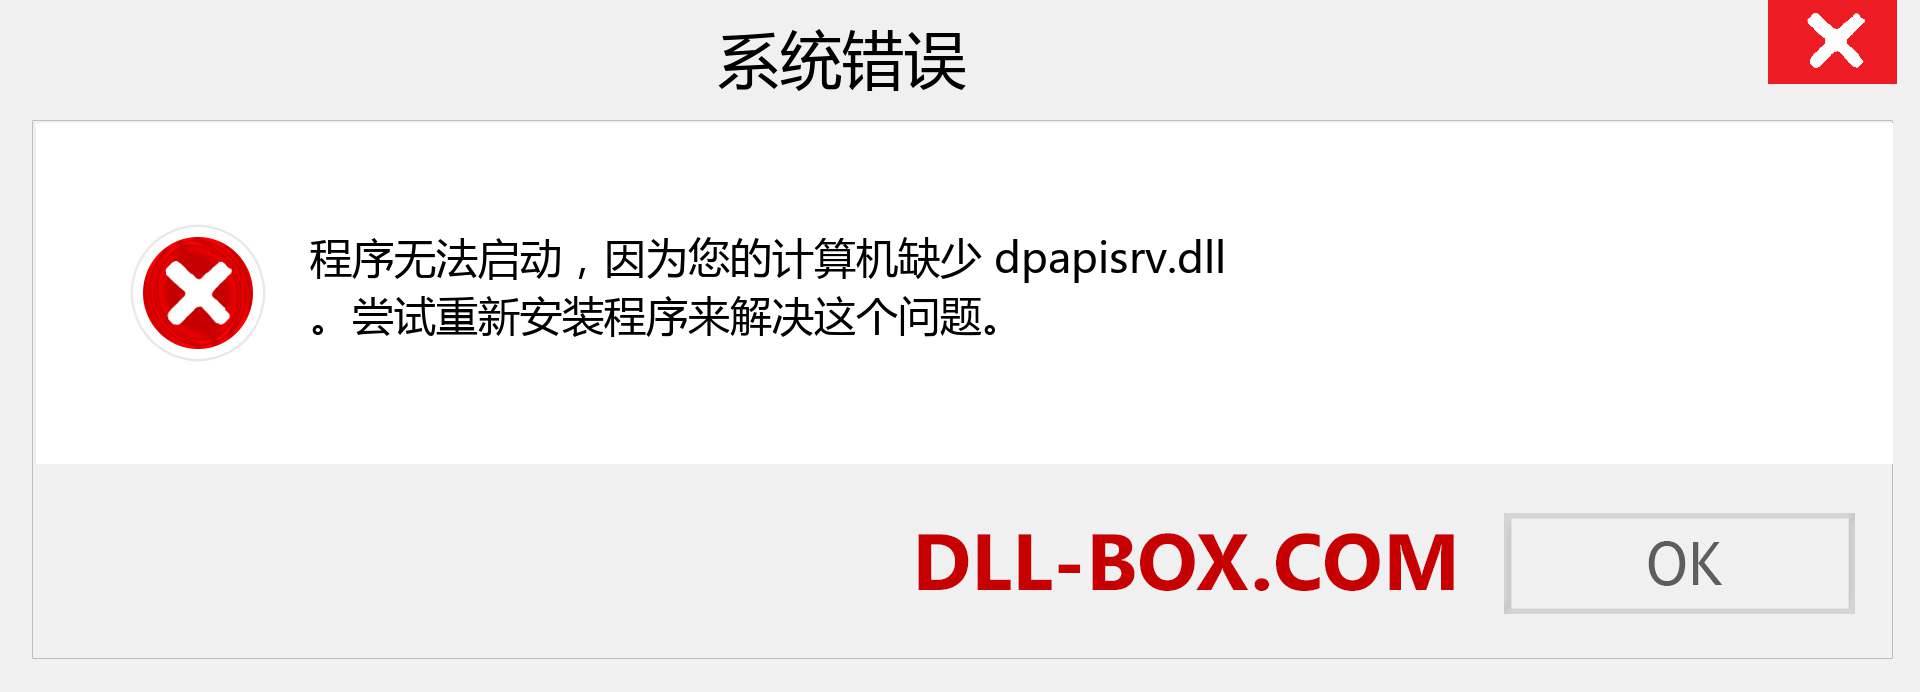 dpapisrv.dll 文件丢失？。 适用于 Windows 7、8、10 的下载 - 修复 Windows、照片、图像上的 dpapisrv dll 丢失错误